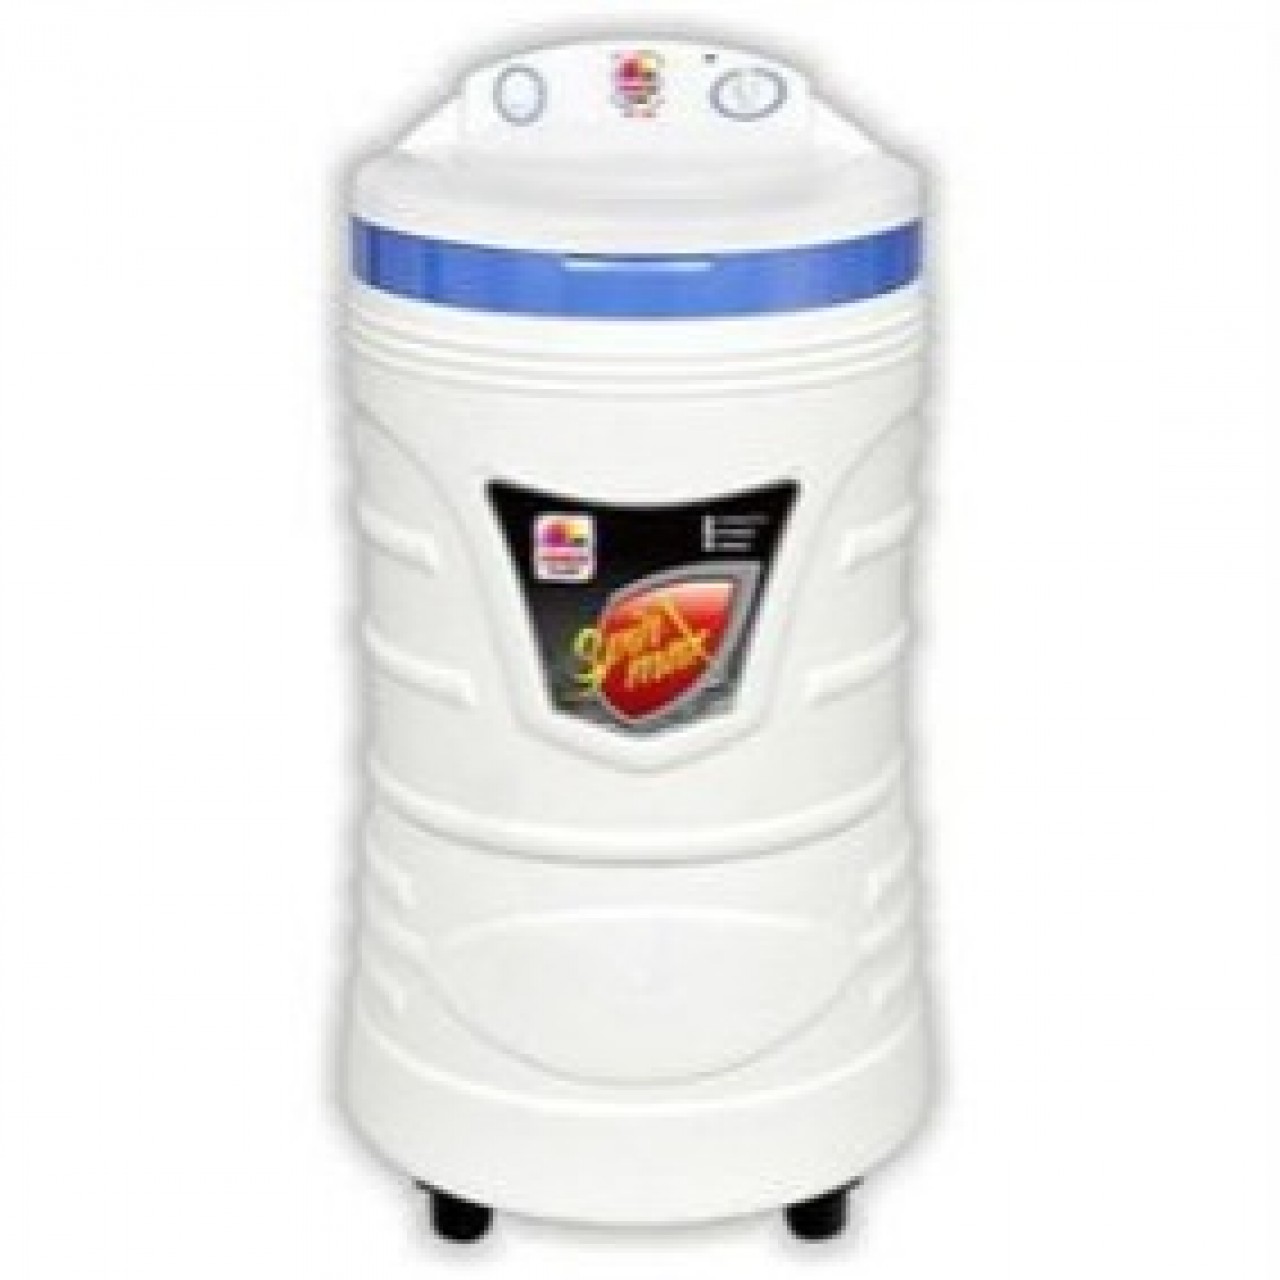 Venus VD-786 Spinner Dryer Machine - Capacity 8Kg